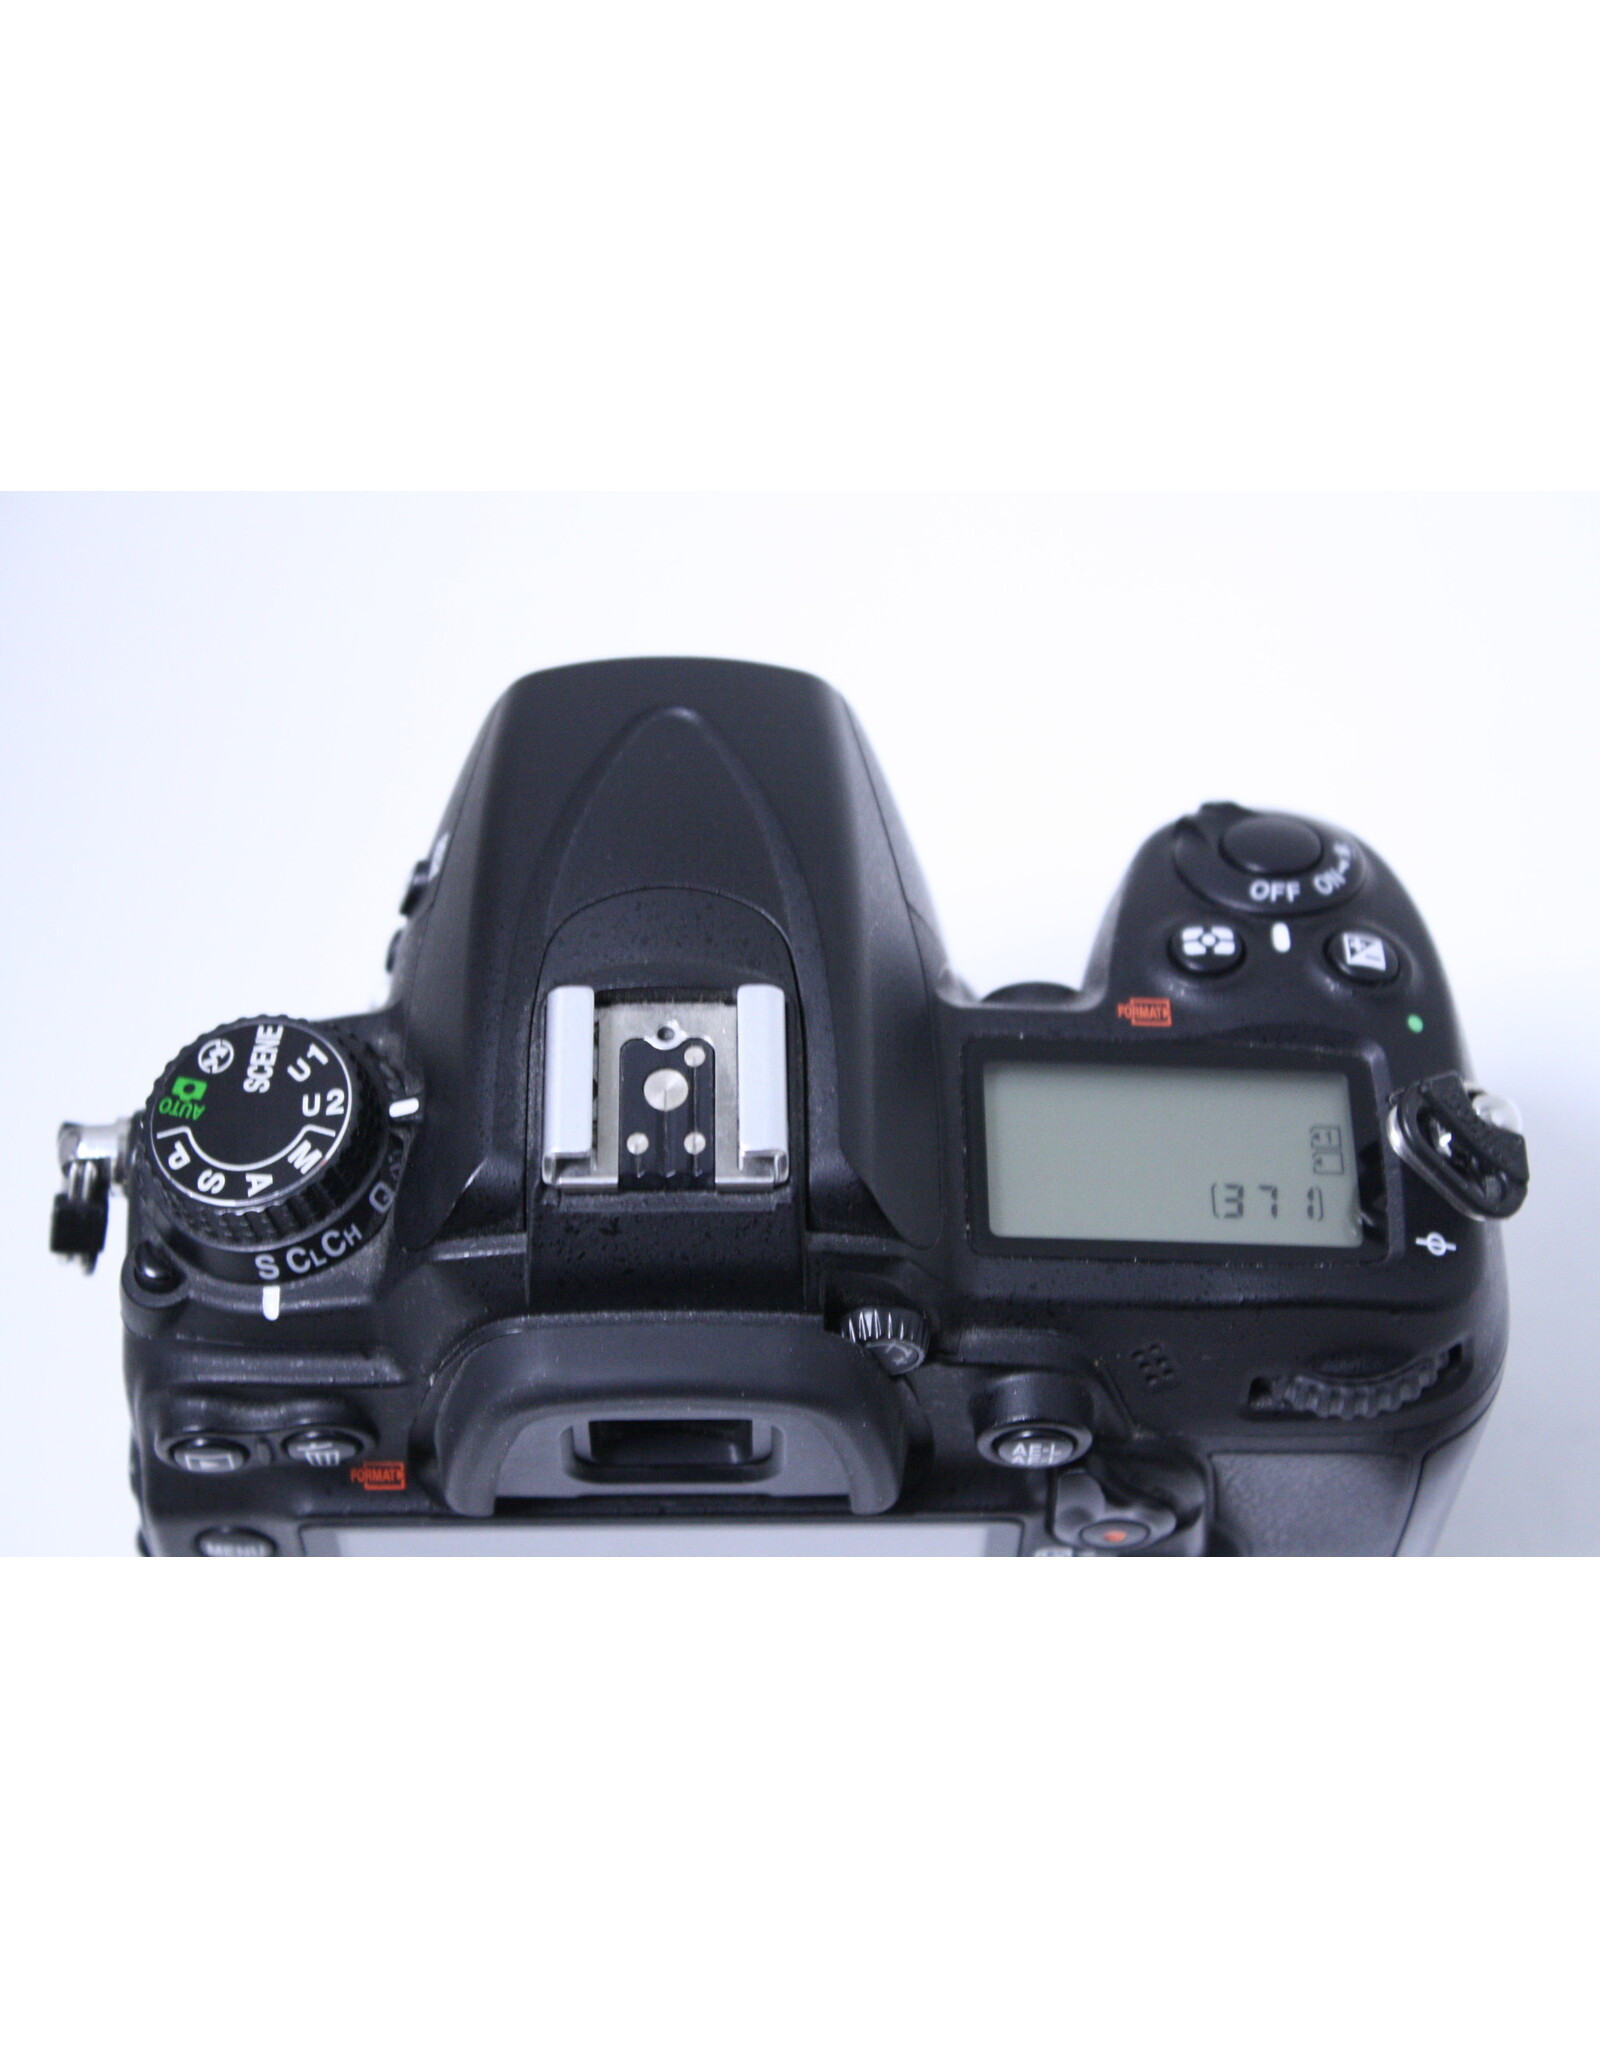 Nikon (SOLD) Nikon D7000 DSLR Camera Body (Pre-owned)